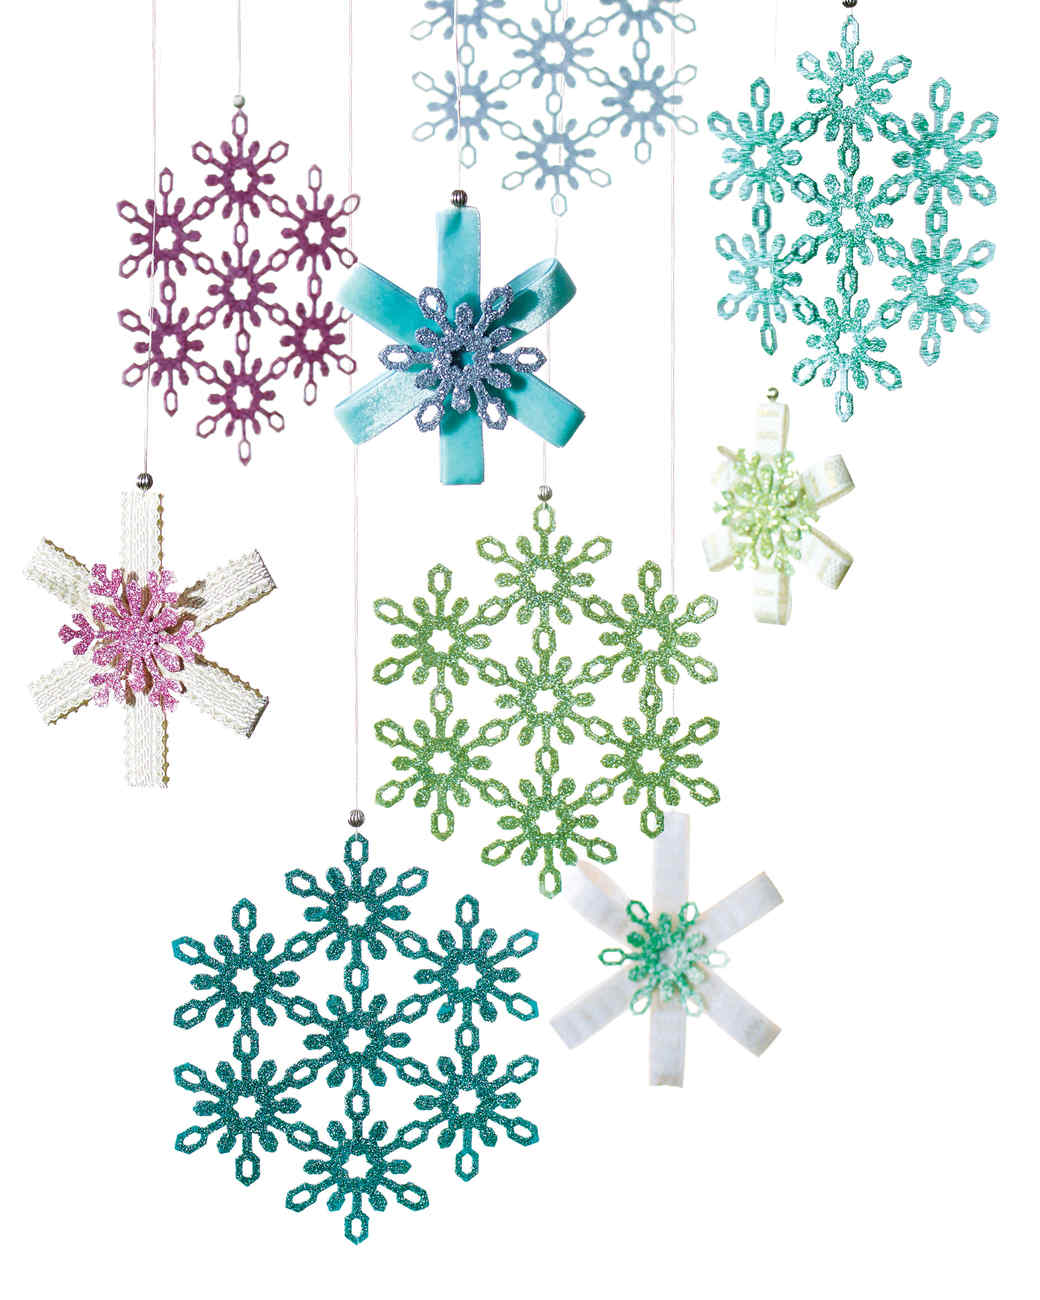 Eric Pike's Glittered Snowflake Ornaments Martha Stewart